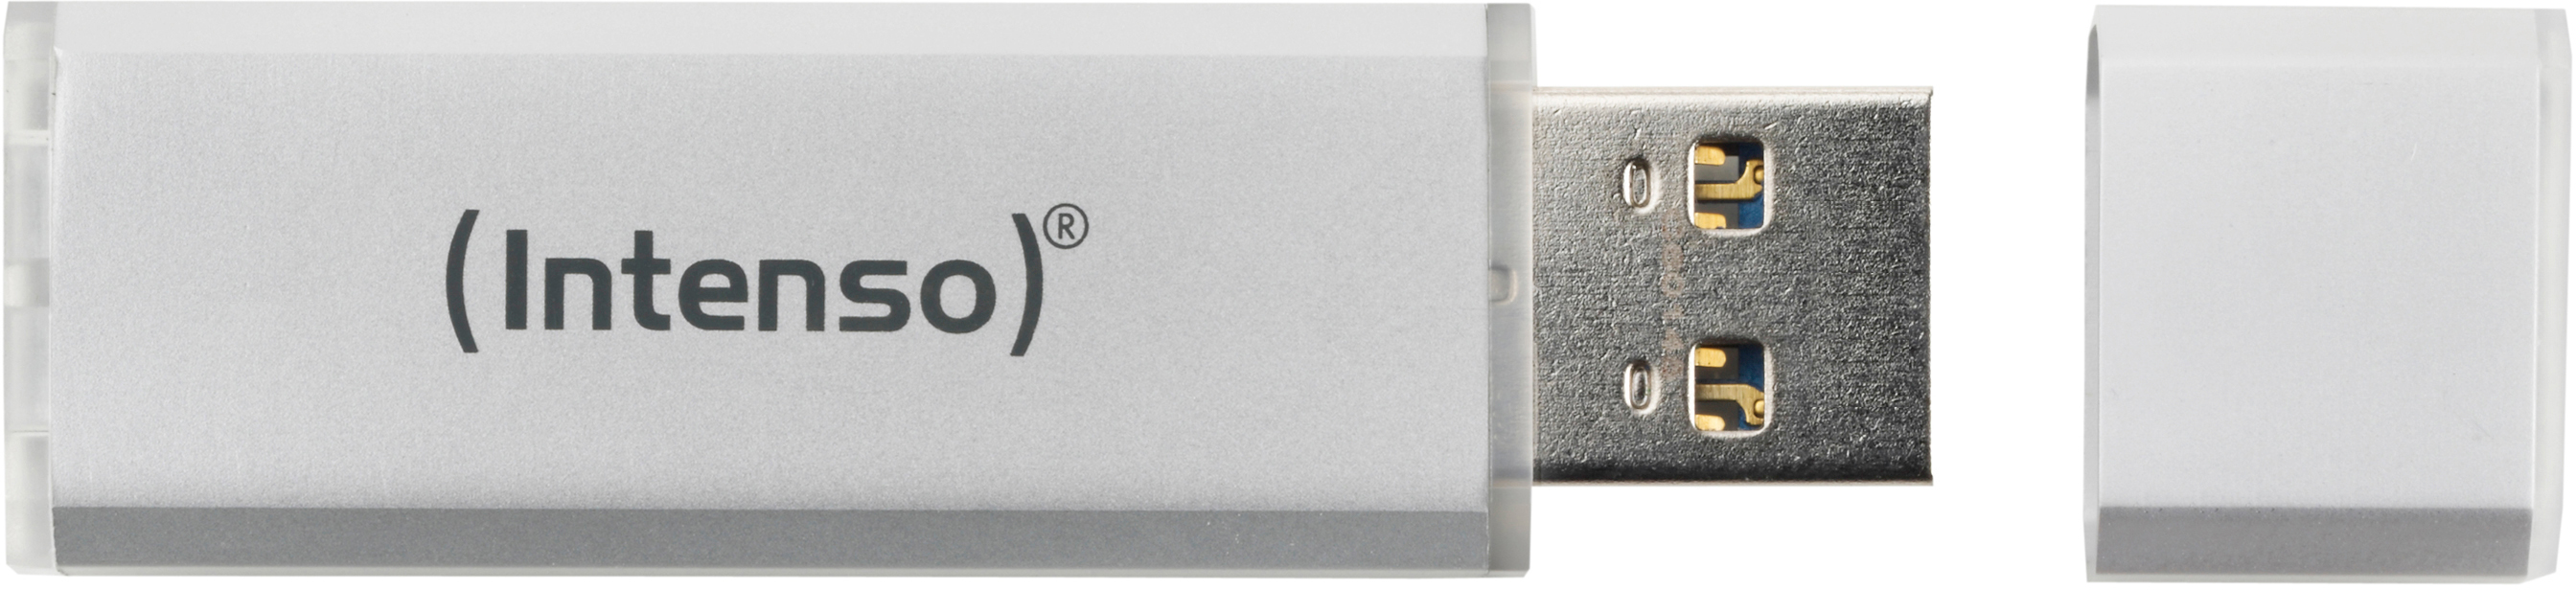 INTENSO Ultra Line GB, Silber 35 16 MB/s, USB-Stick